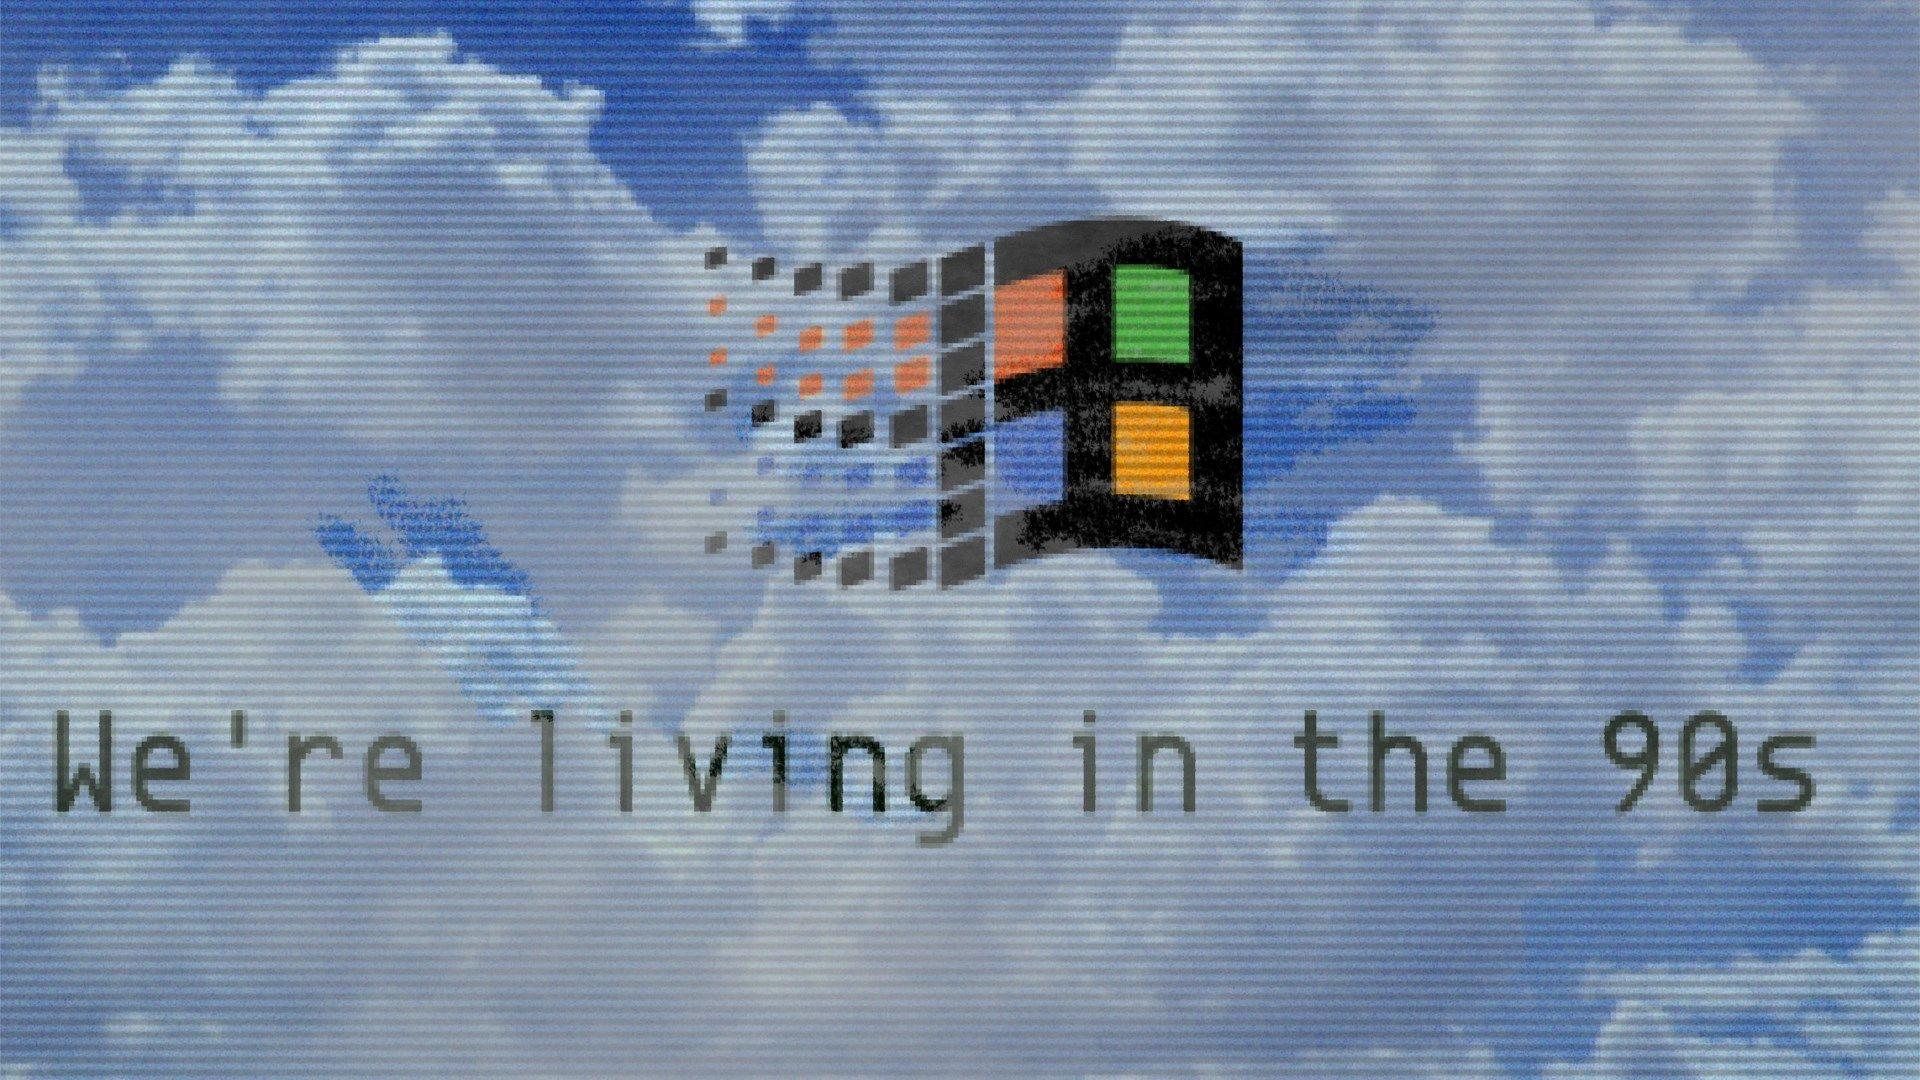 windows 95 original dancing baby screensaver download